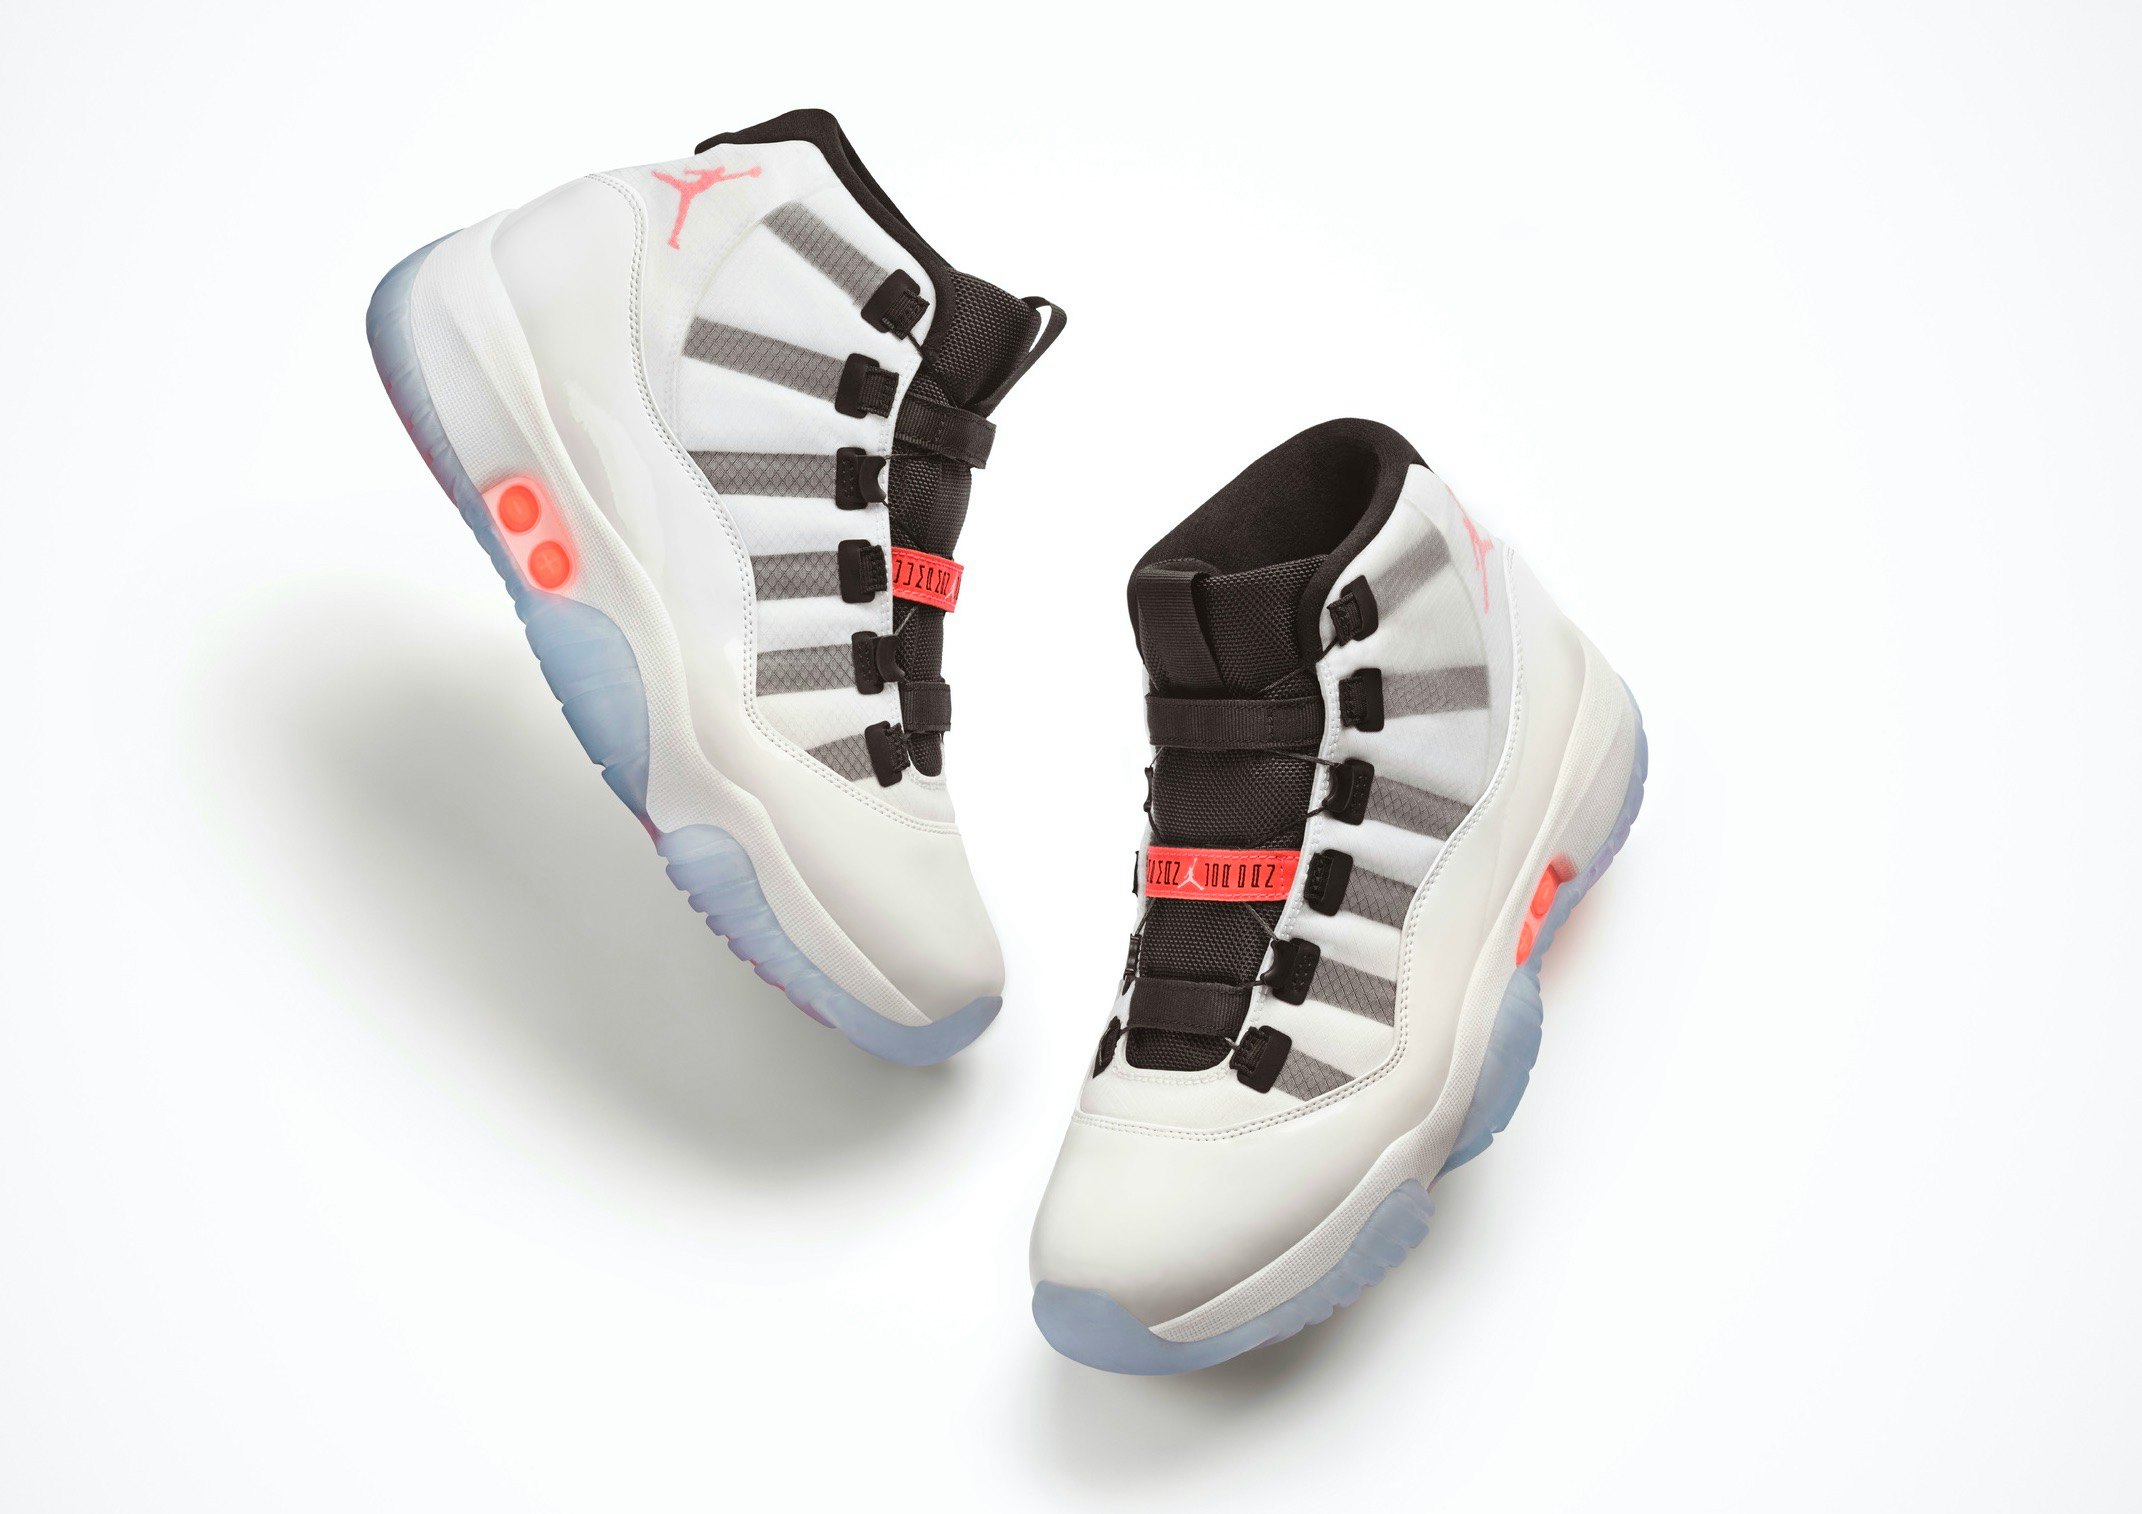 Nike's bringing its self-lacing tech to the Air Jordan 11 sneaker